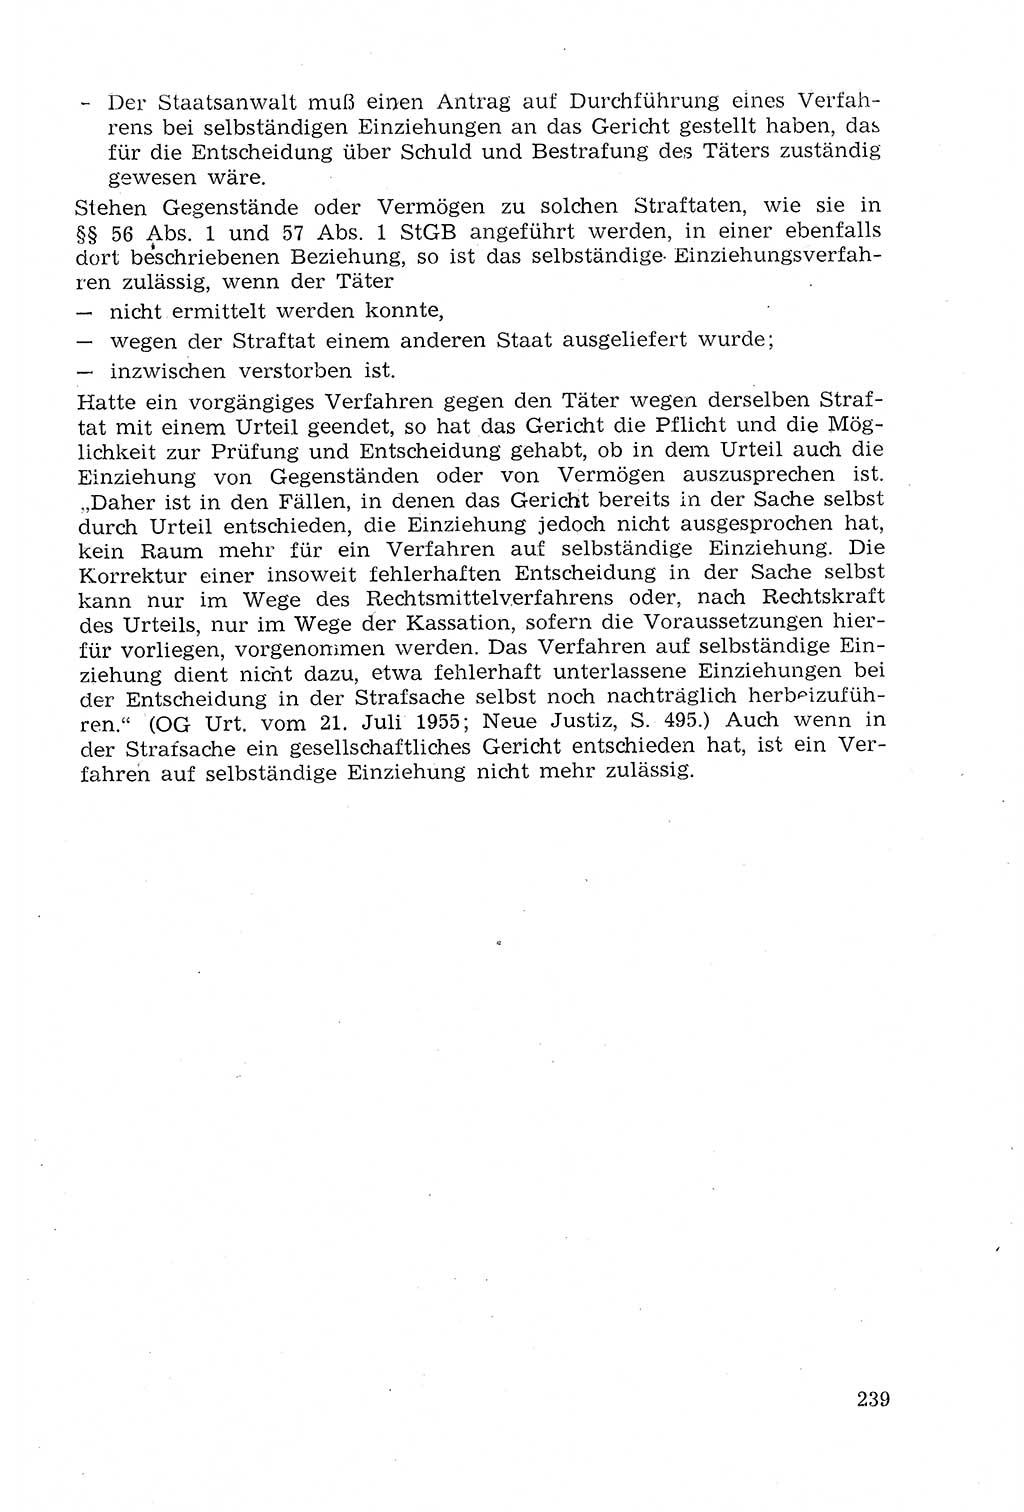 Strafprozeßrecht der DDR (Deutsche Demokratische Republik), Lehrmaterial 1969, Seite 239 (Strafprozeßr. DDR Lehrmat. 1969, S. 239)